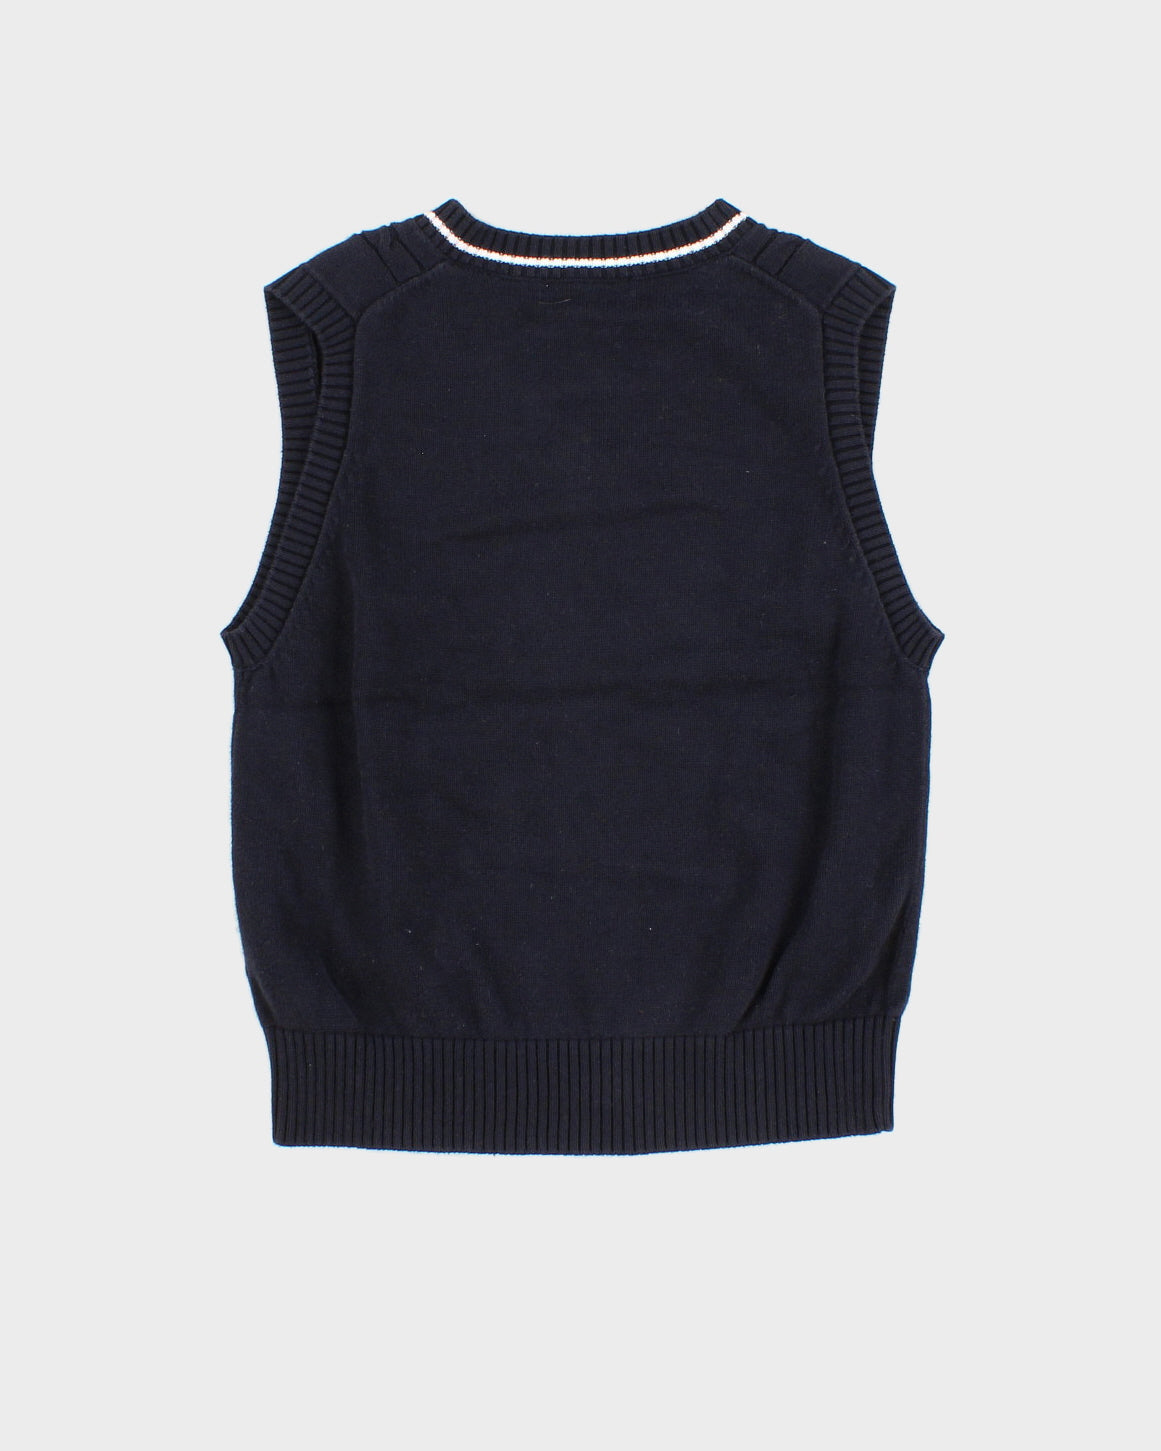 Children's Navy Burberry Sweater Vest